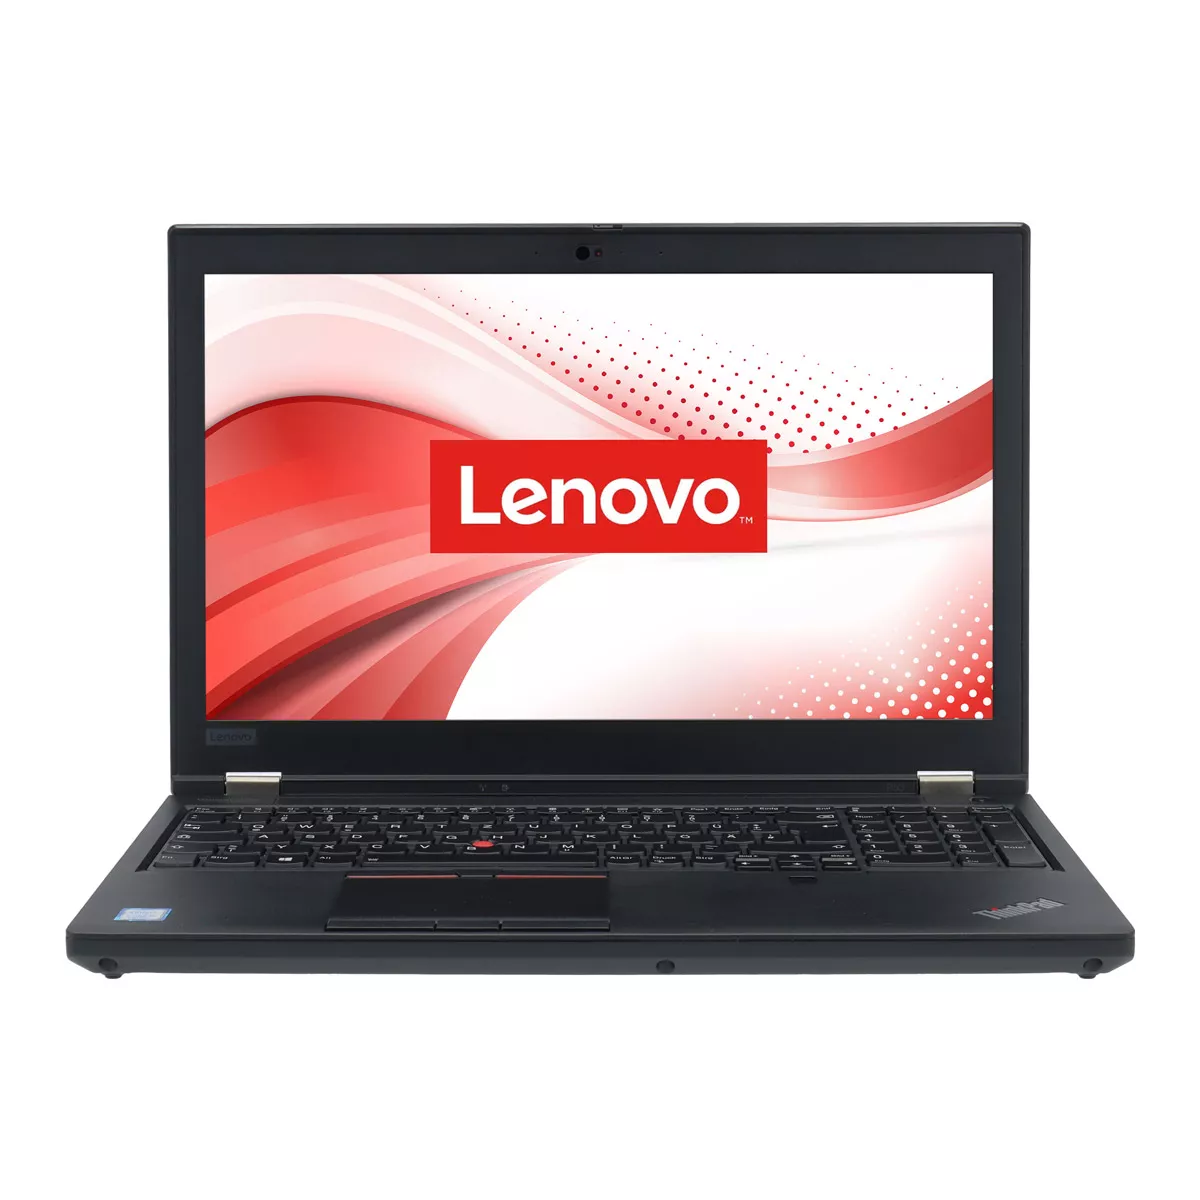 Lenovo ThinkPad P53 Core i9 9880H nVidia Quadro RTX 4000 32 GB 500 GB M.2 nVME SSD Webcam B